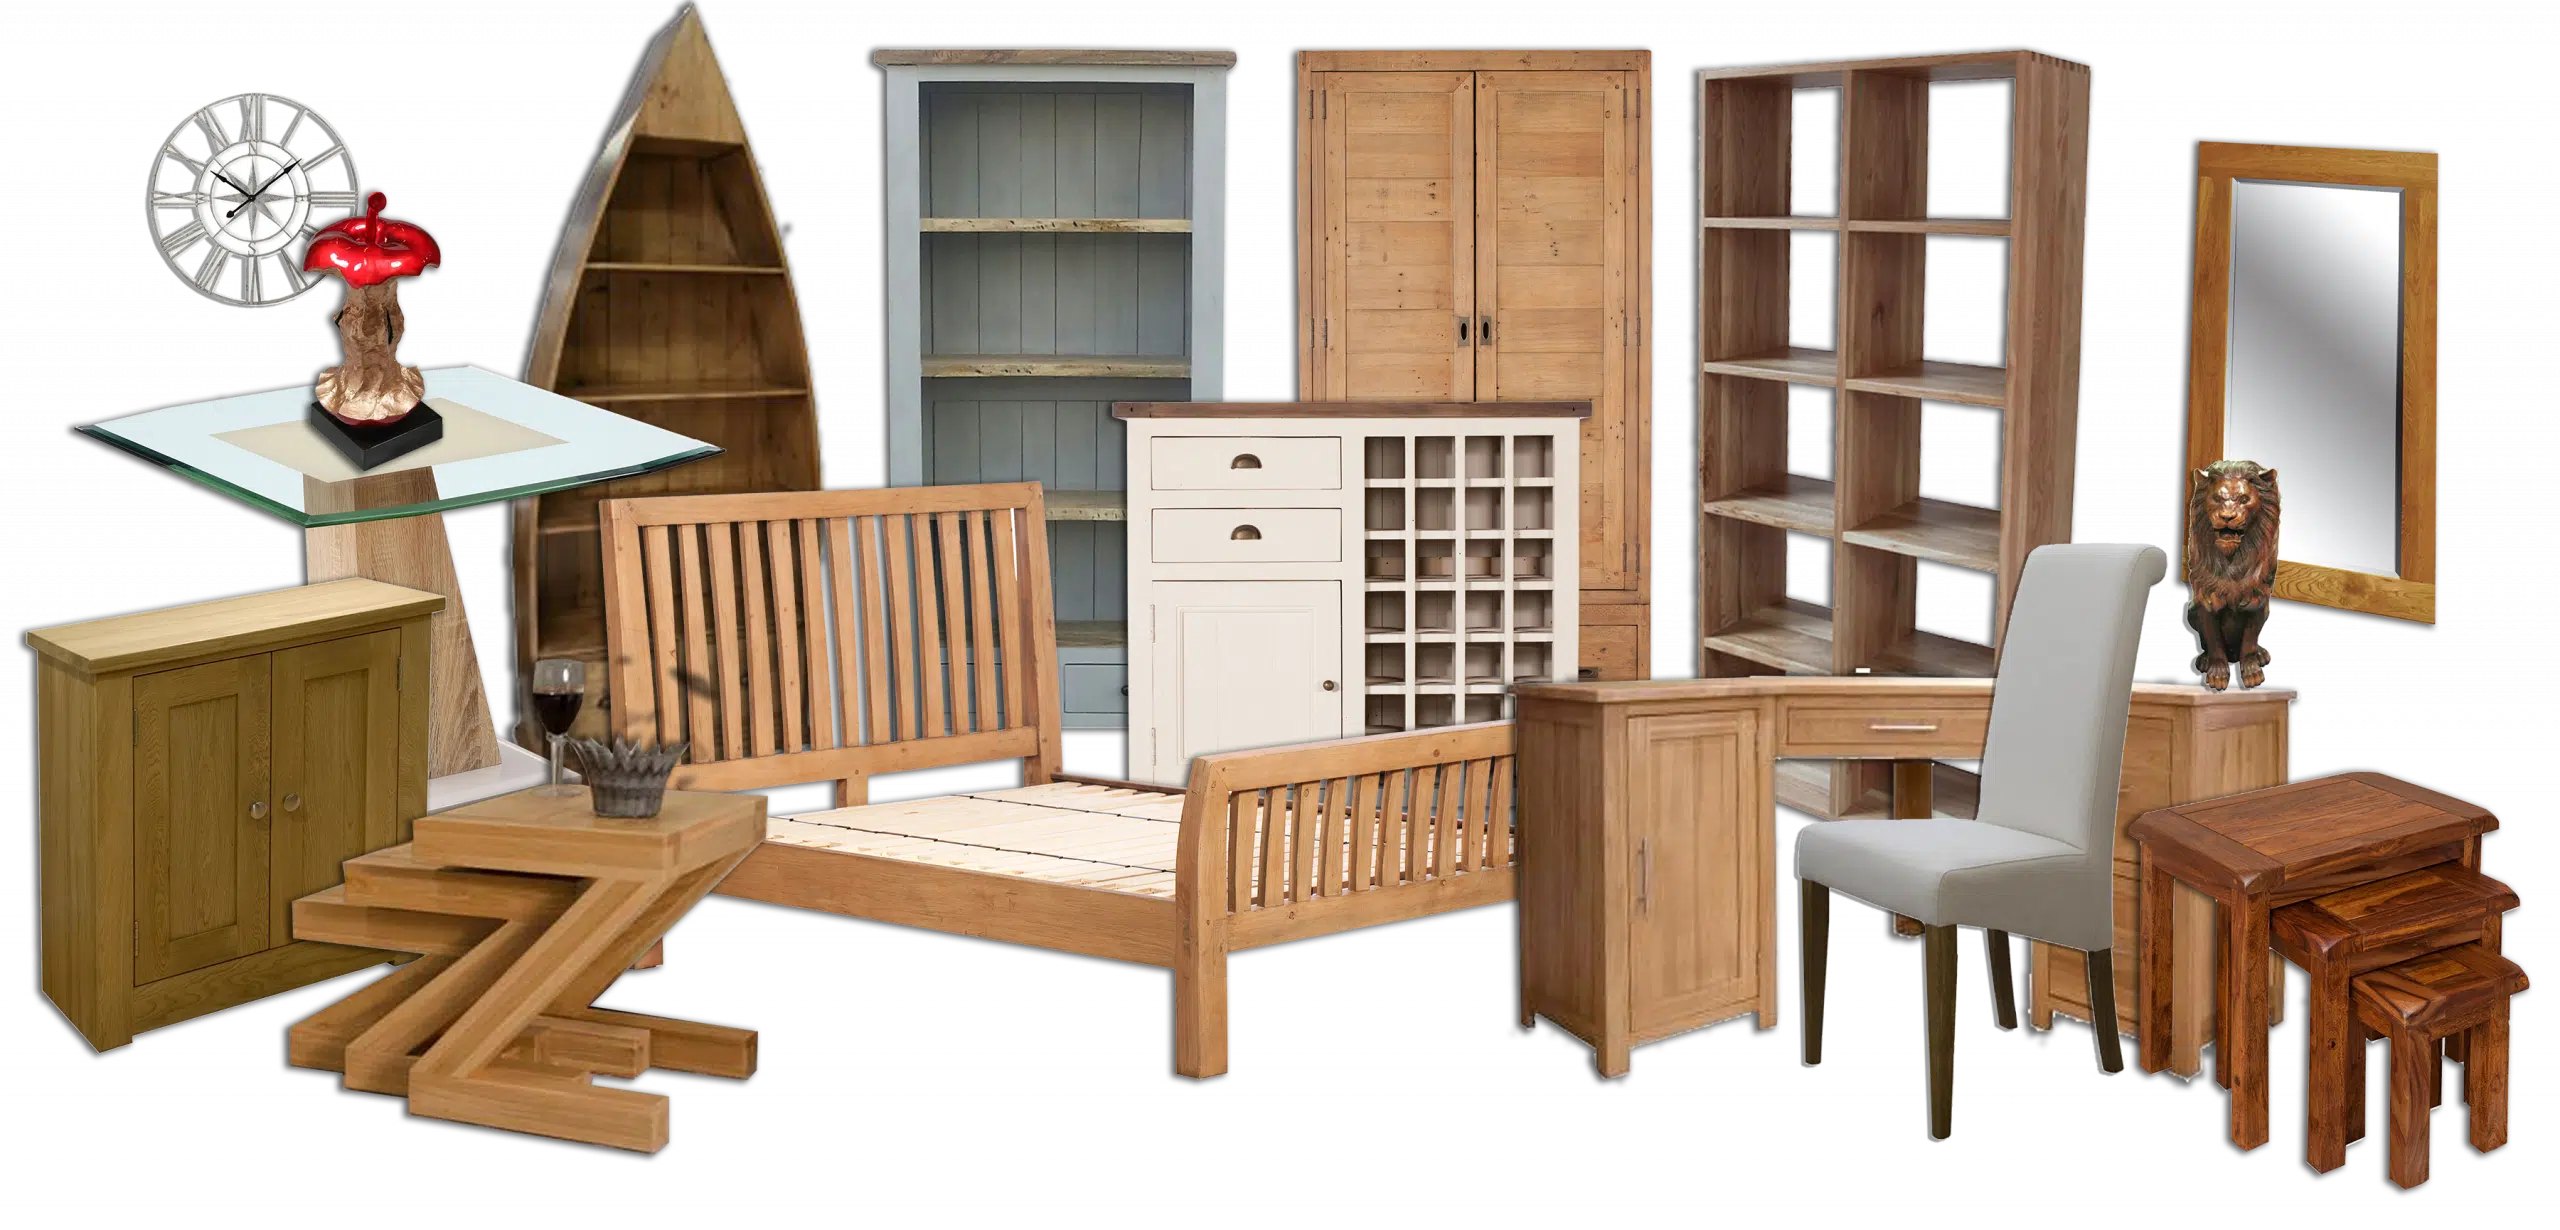 Мебель оптом сайт. Набор деревянной мебели. Мебель на белом фоне. Различная мебель. Детская деревянная мебель.